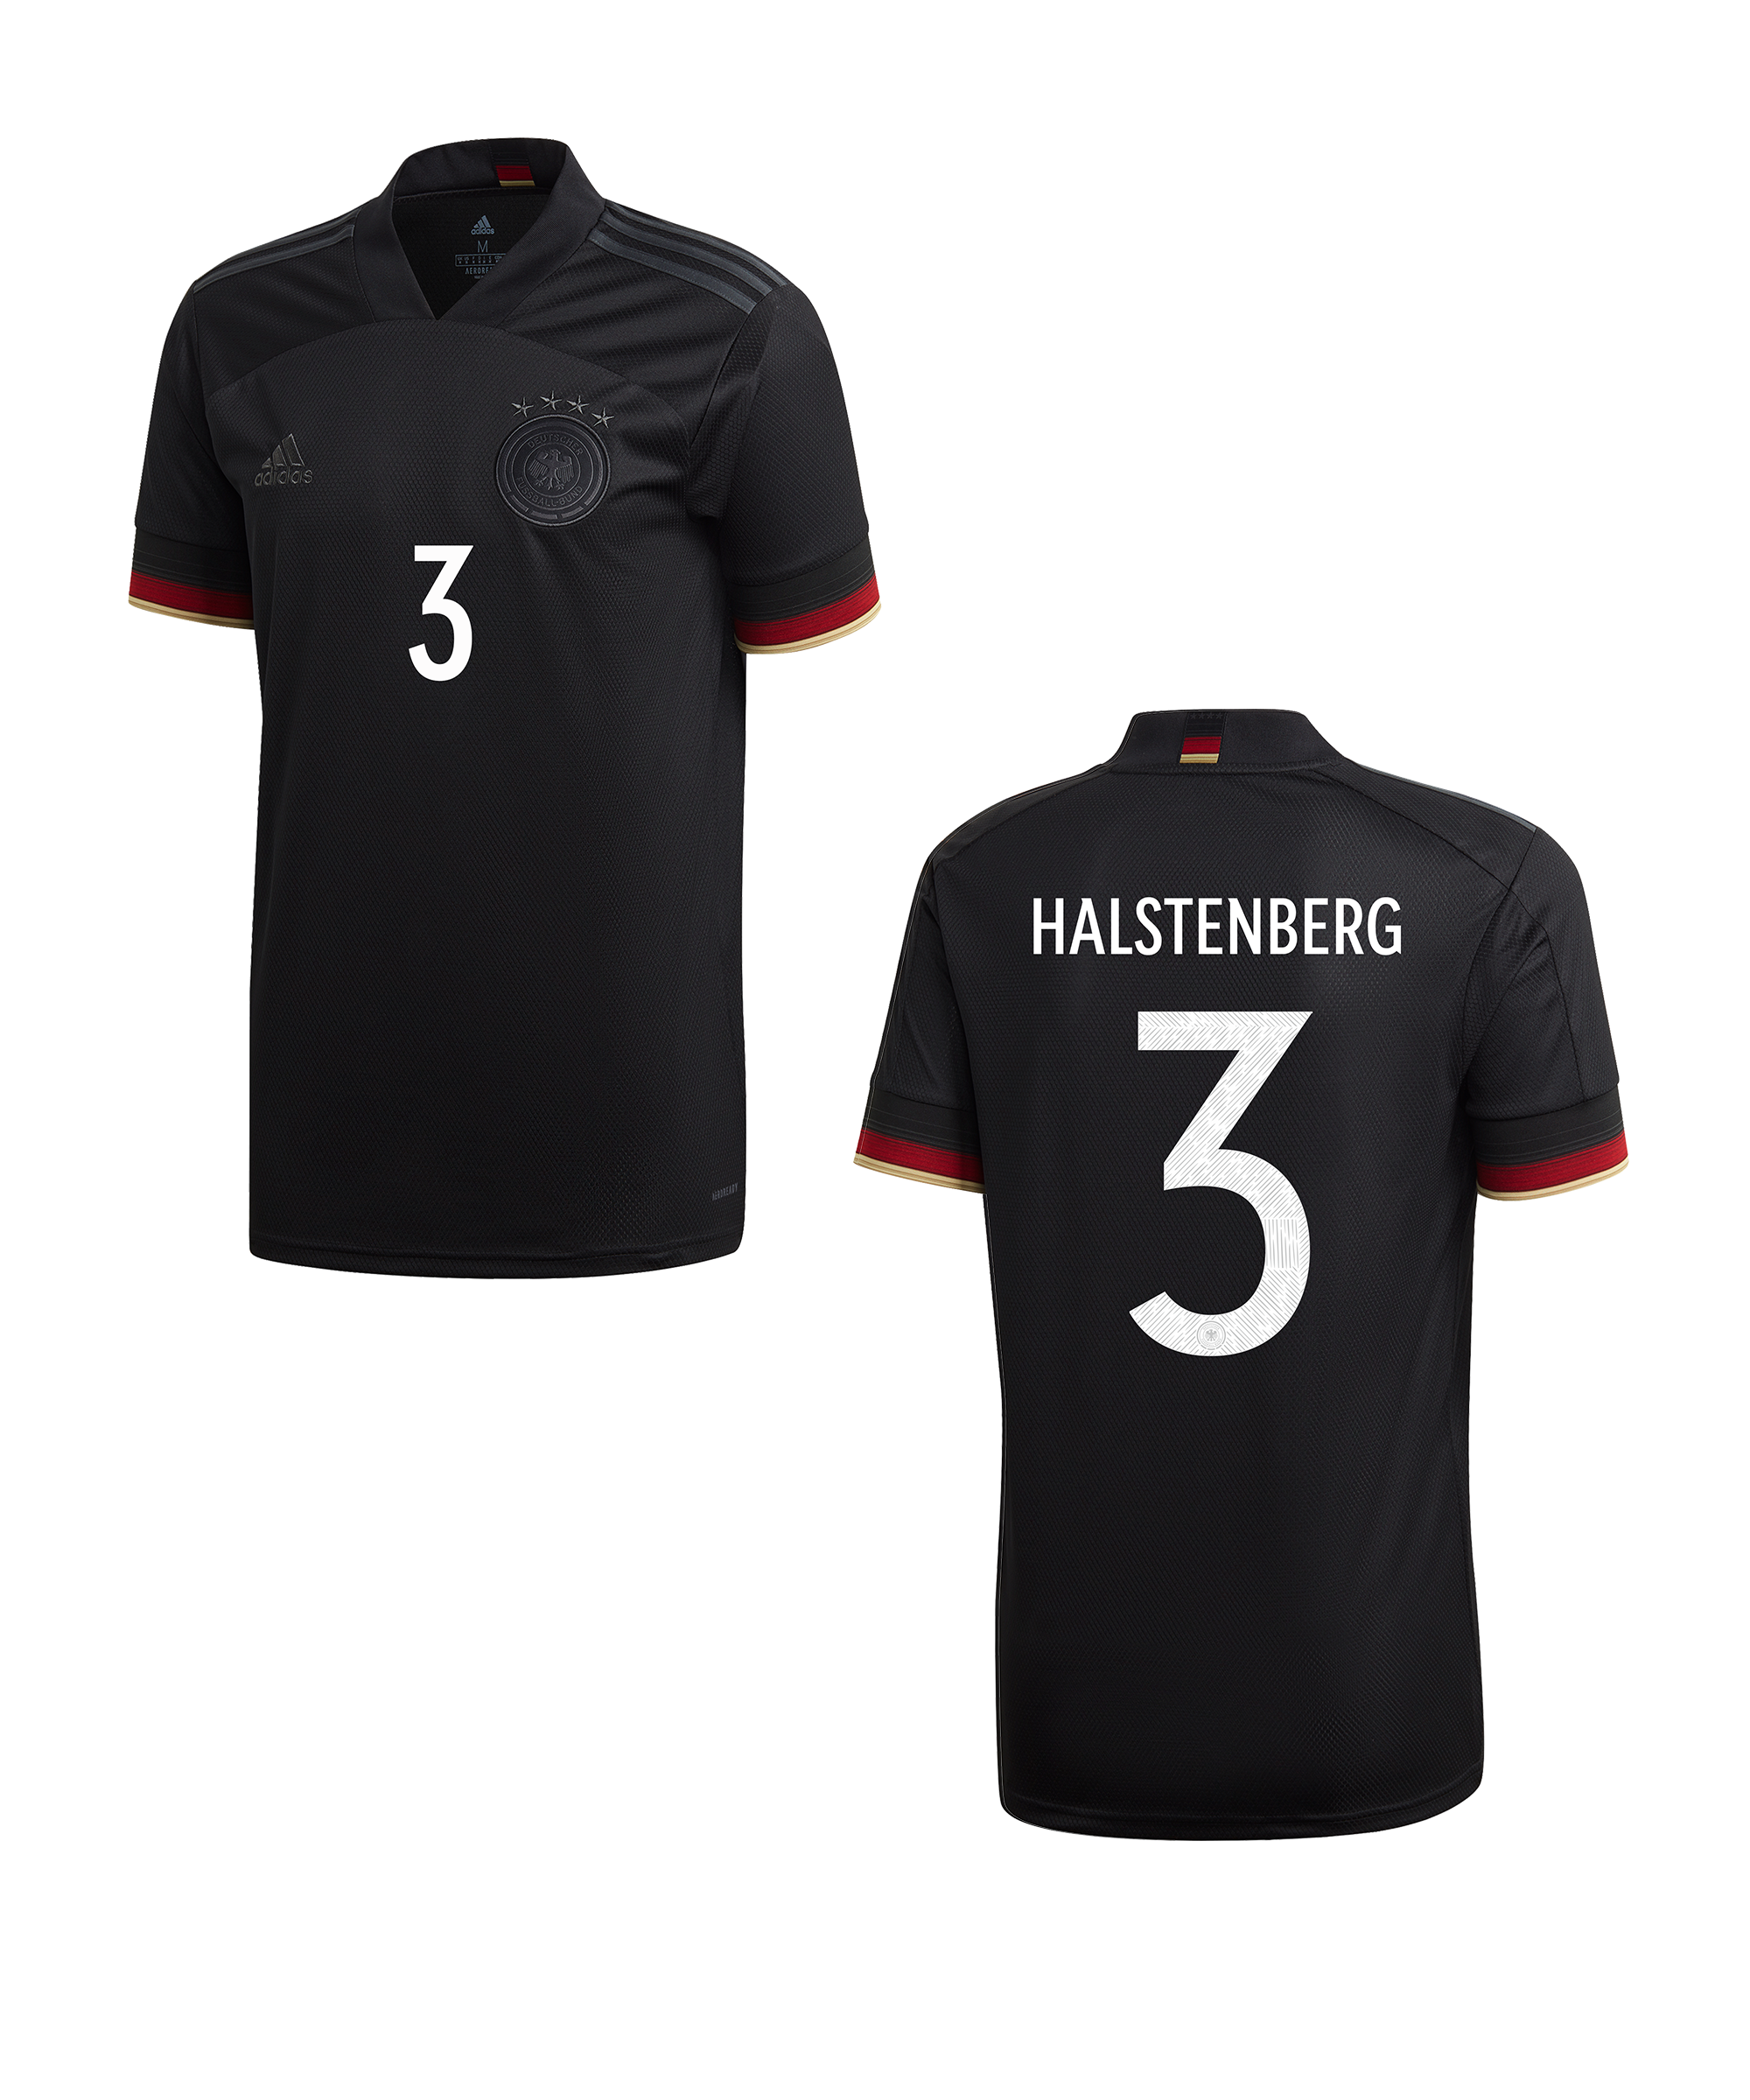 Camiseta adidas DFB Deutschland t Away EM2020 Halstenberg